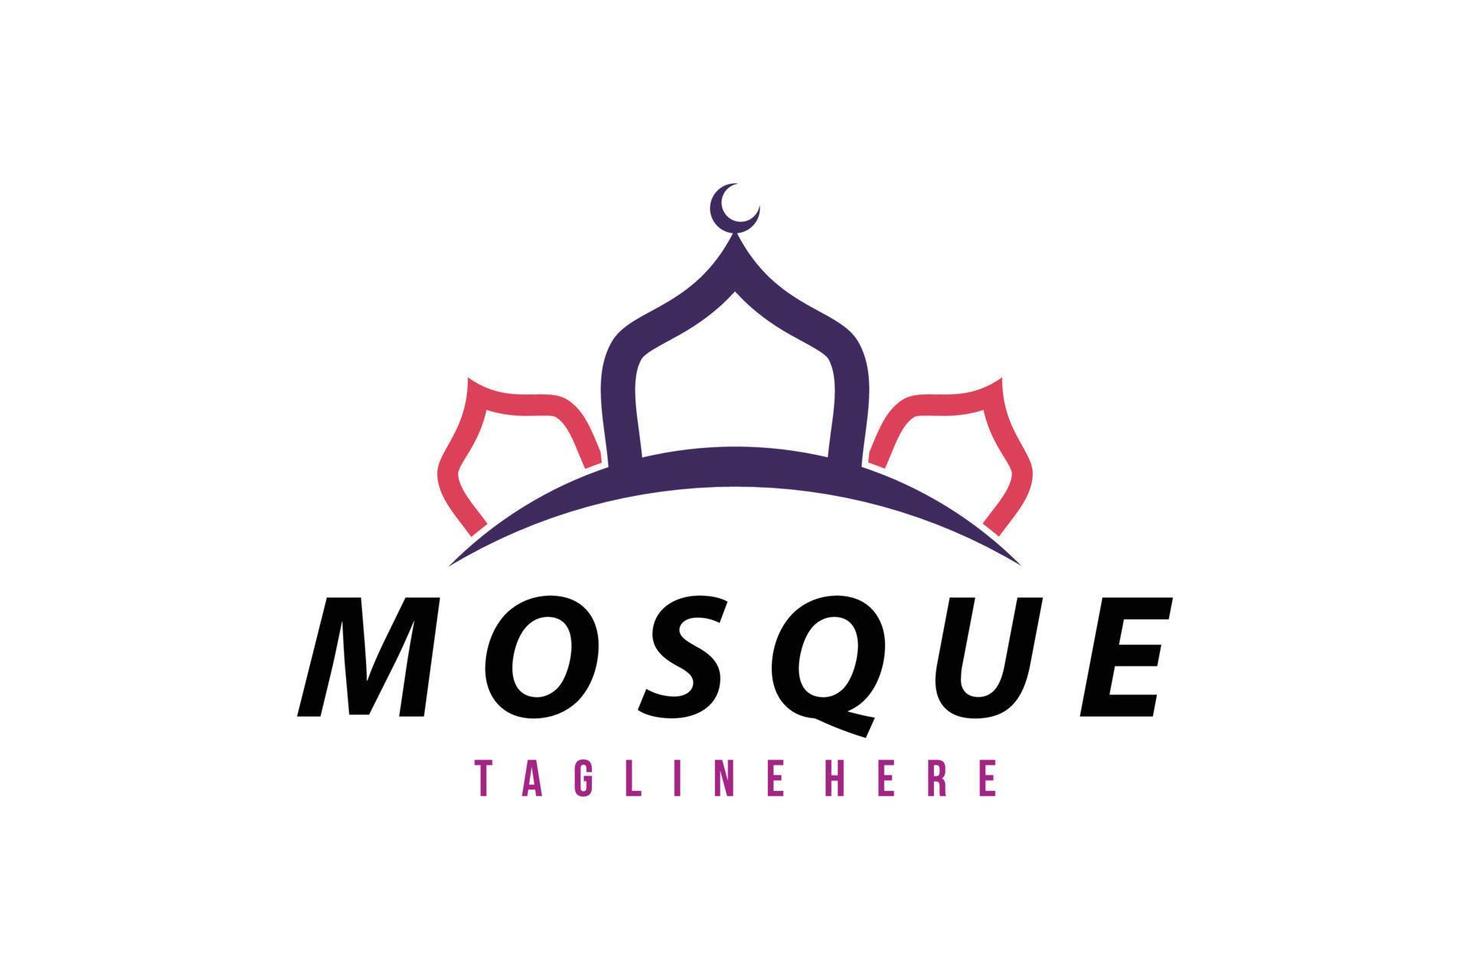 vetor de ícone do logotipo da mesquita isolado